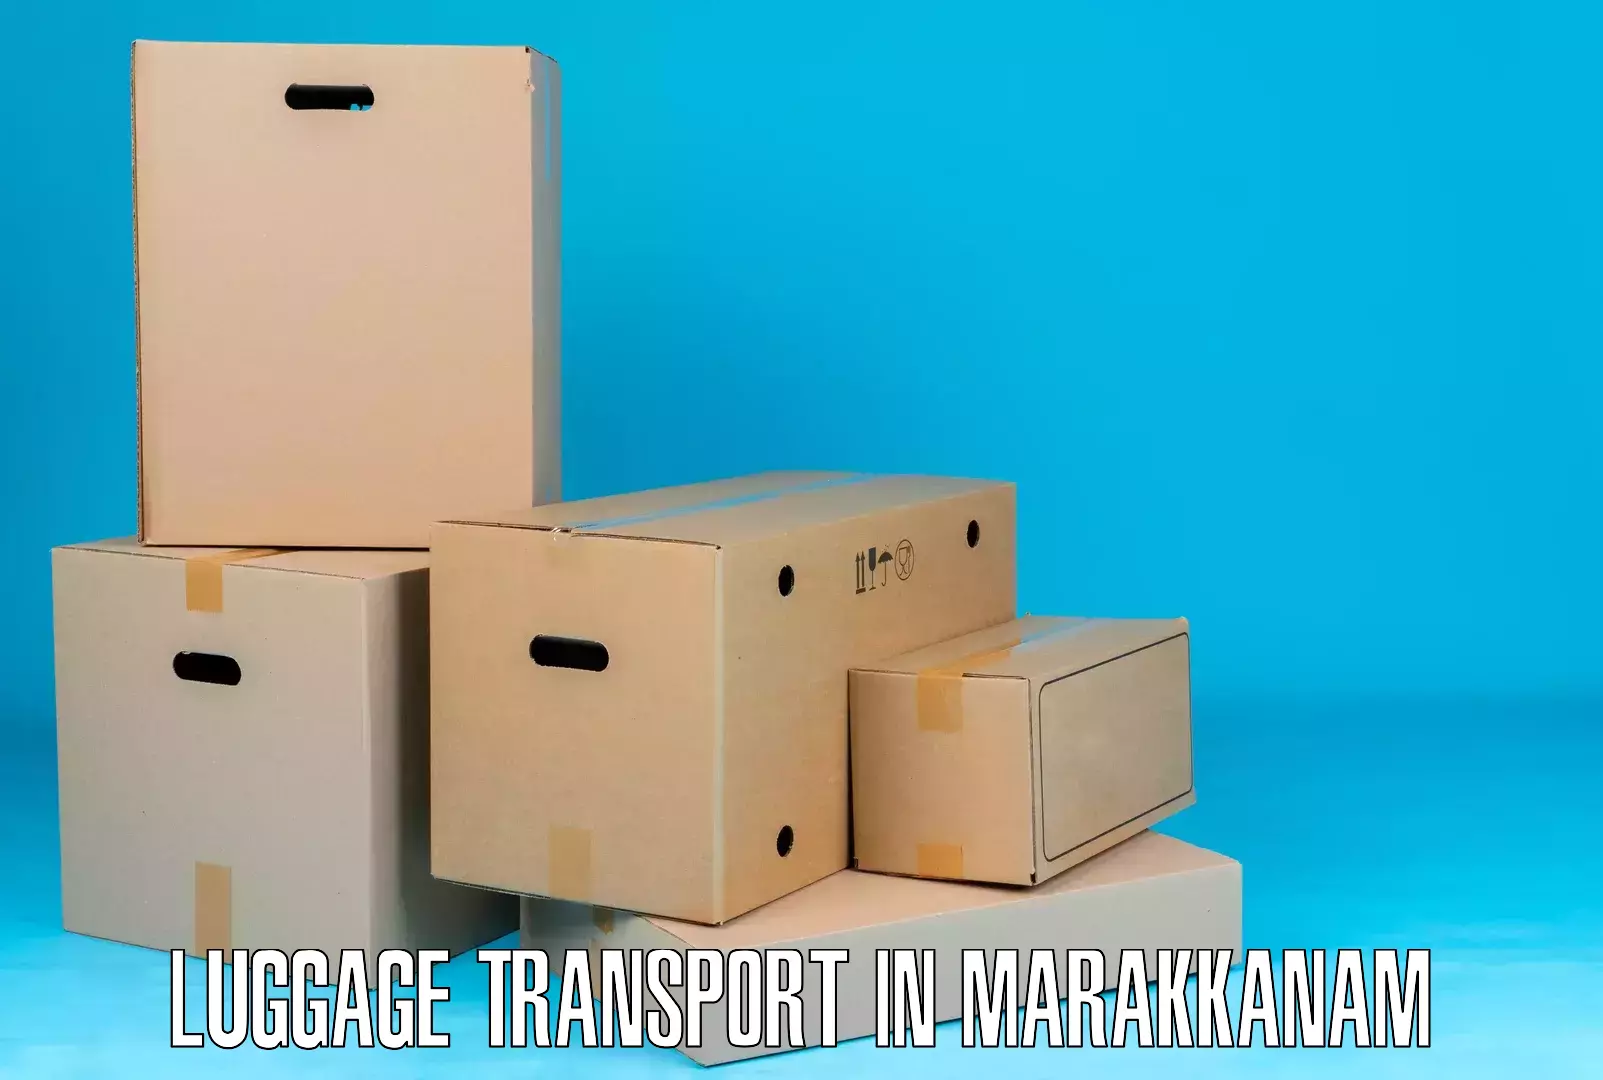 Luggage delivery estimate in Marakkanam